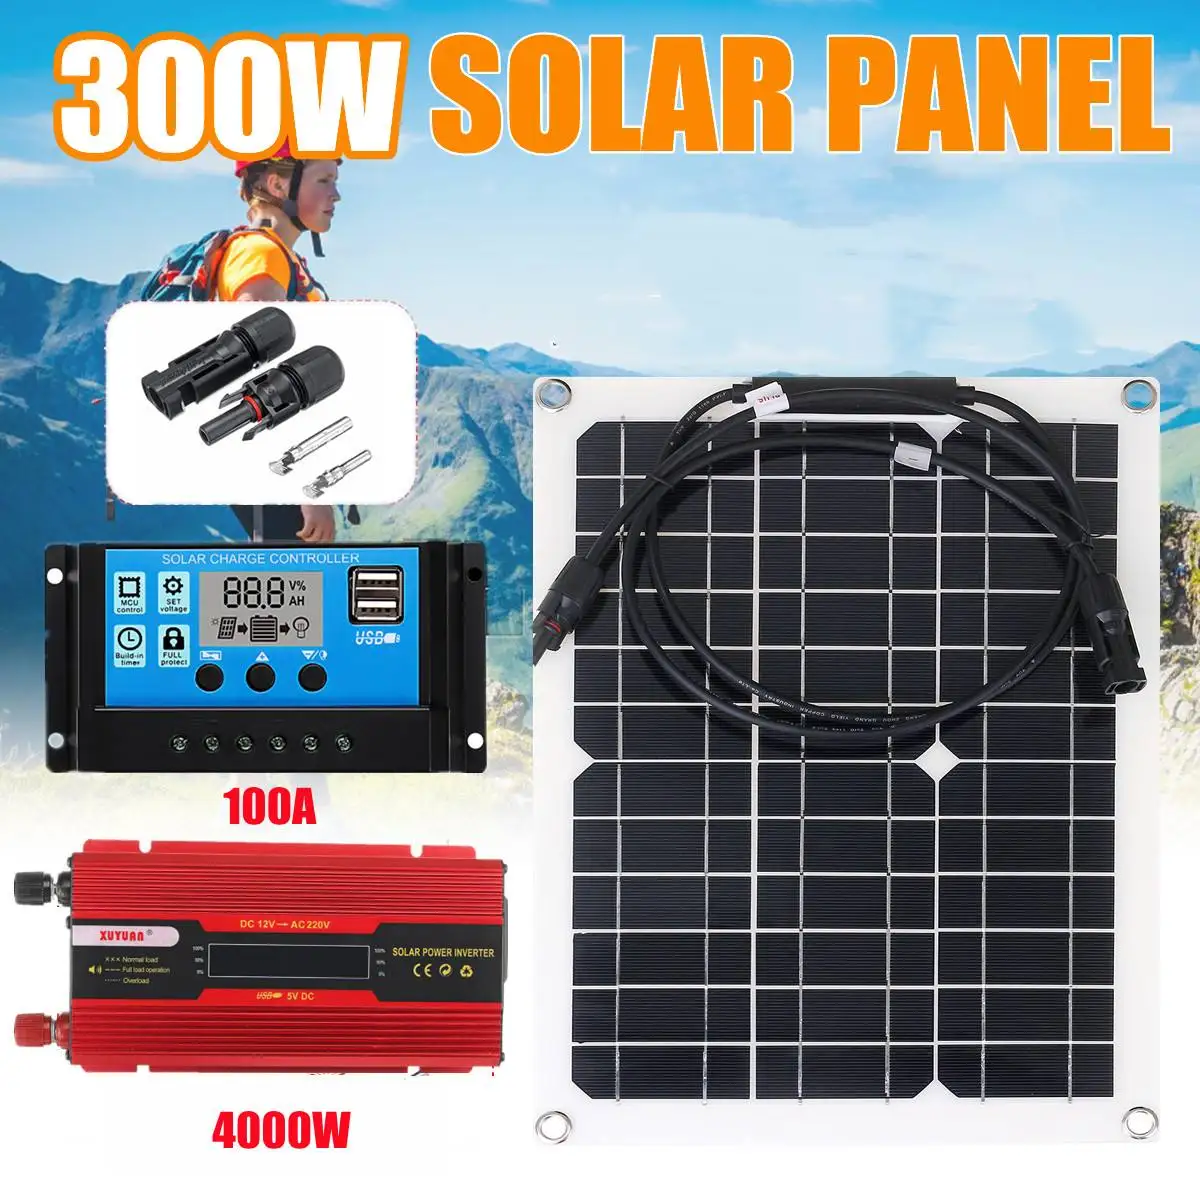 Фото 4000 Вт солнечная энергетическая система 220 В/110 В инверторный комплект 300 Солнечная